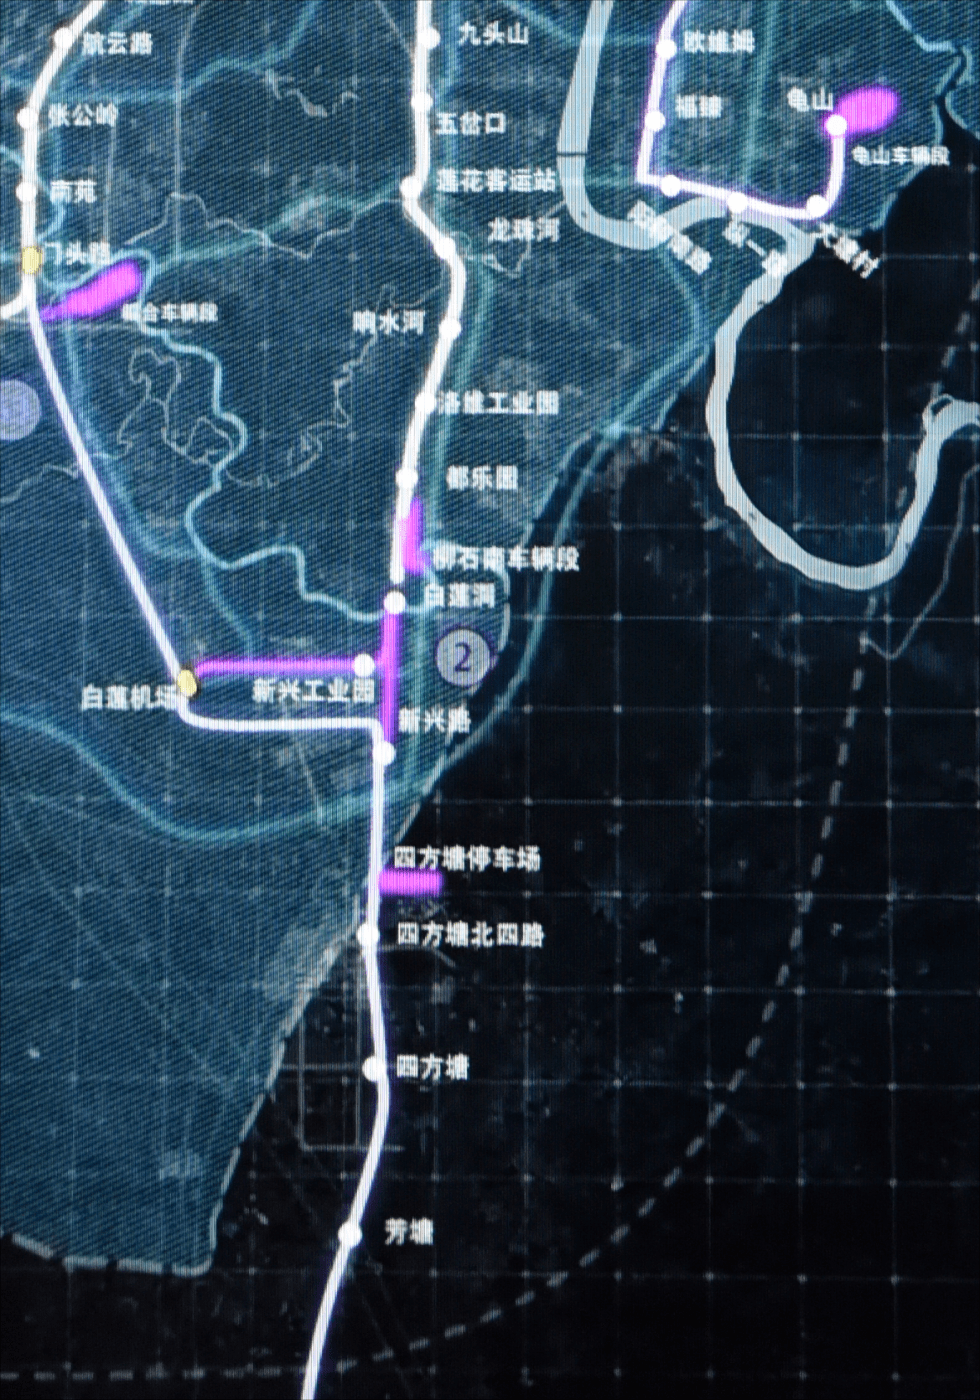 柳州轻轨最新规划图图片